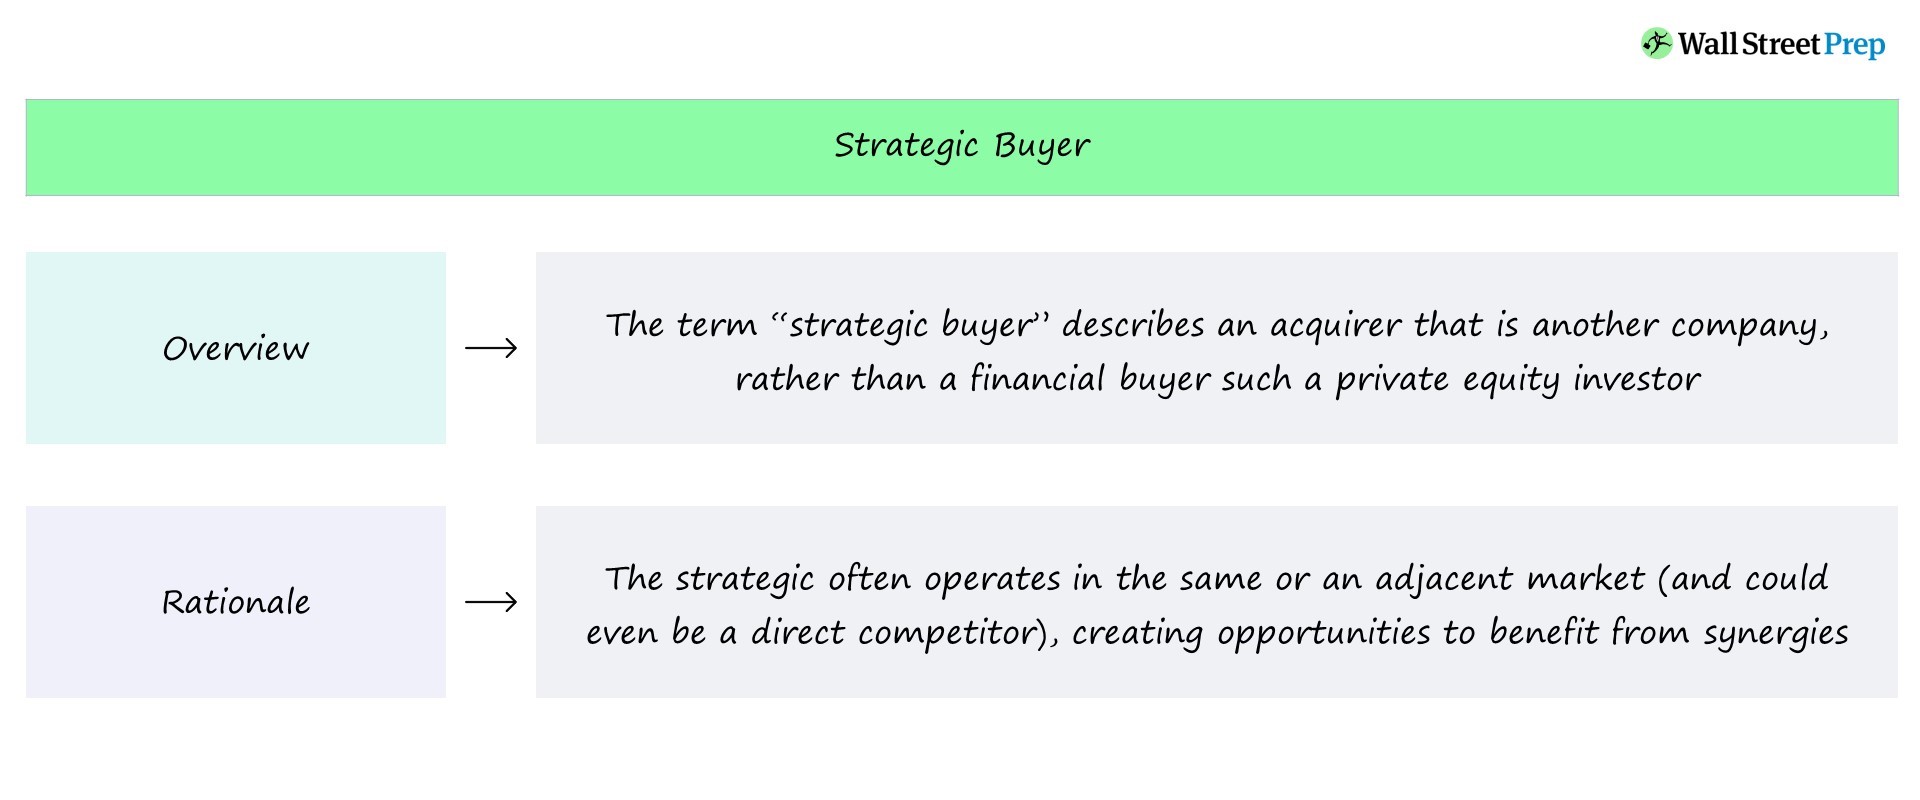 Comprador estratégico versus comprador financiero